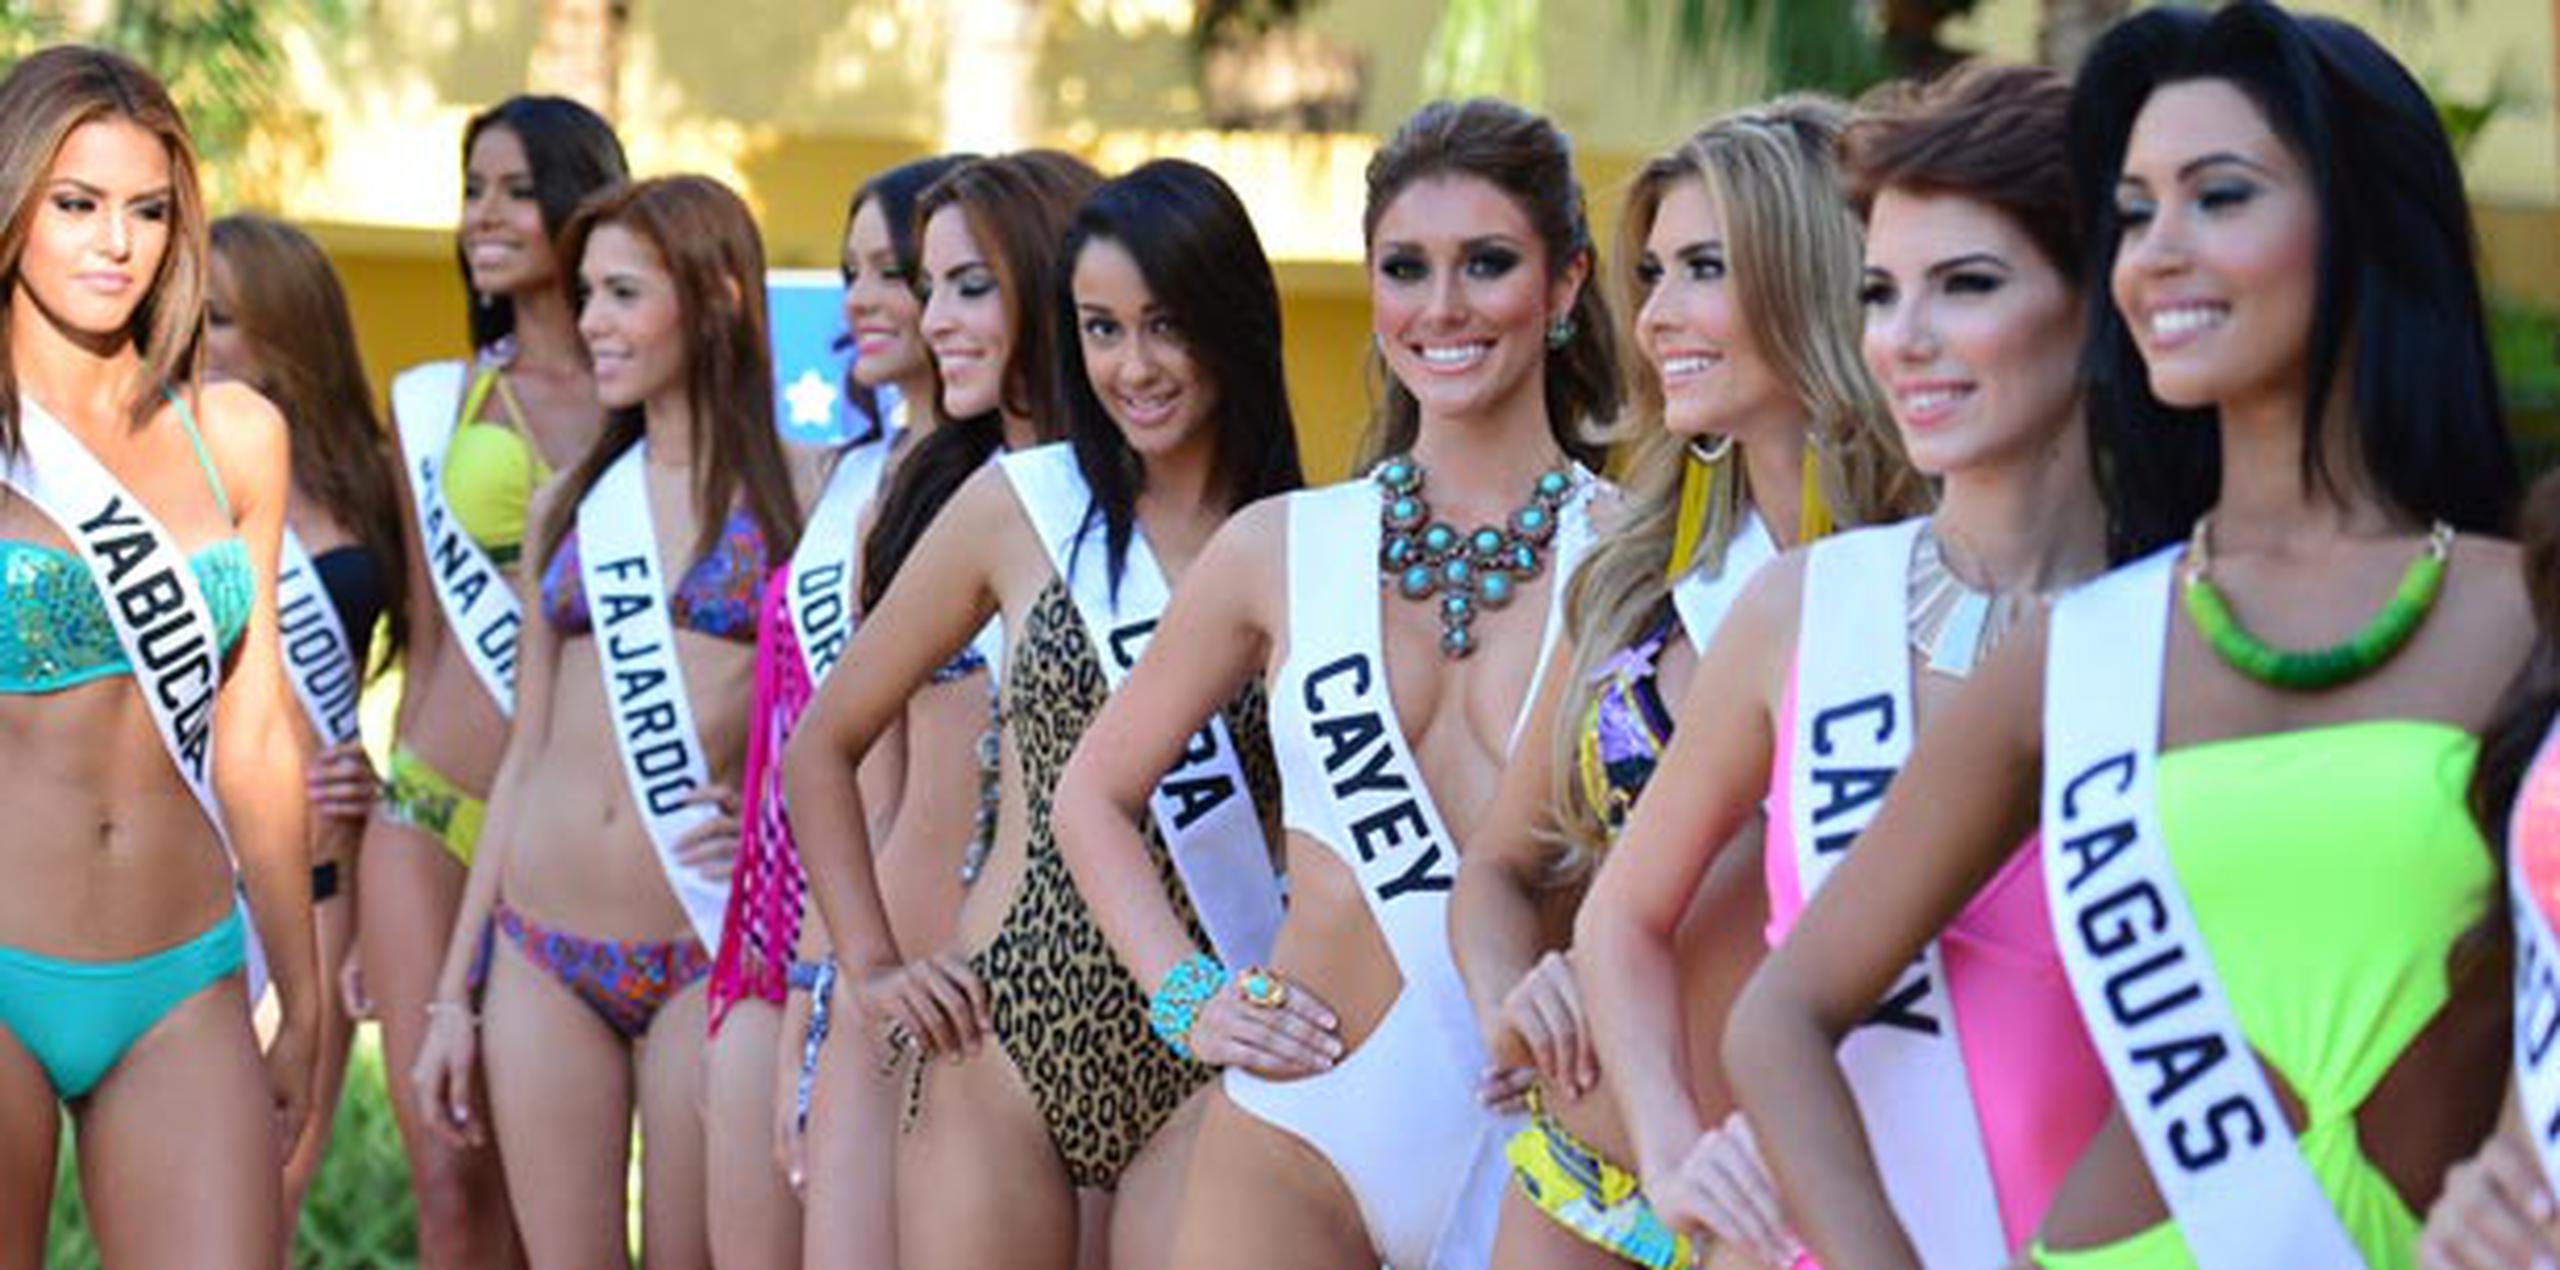 La corona de Miss Universe Puerto Rico 2014 se entregará este jueves en el Centro de Bellas Artes de San Juan. (luis.alcaladelolmo@gfrmedia.com)